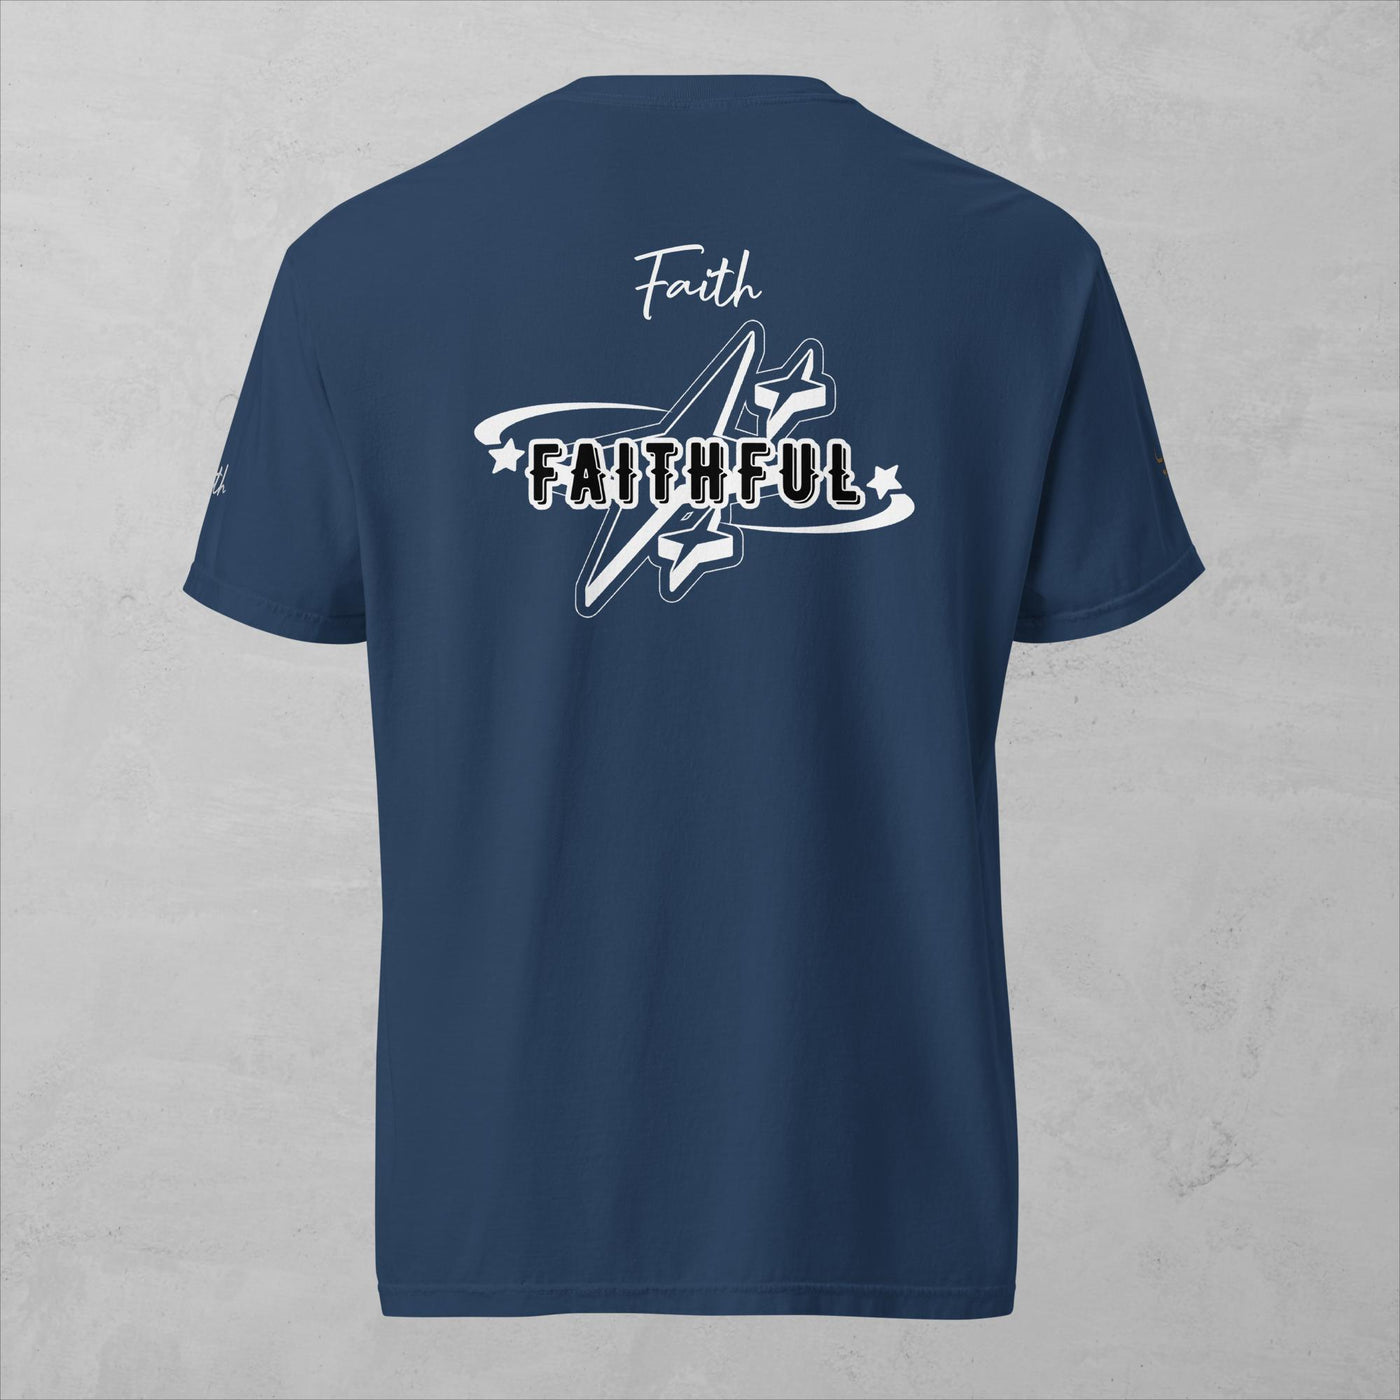 J.A Faith -Faithful- Men's heavyweight t-shirt